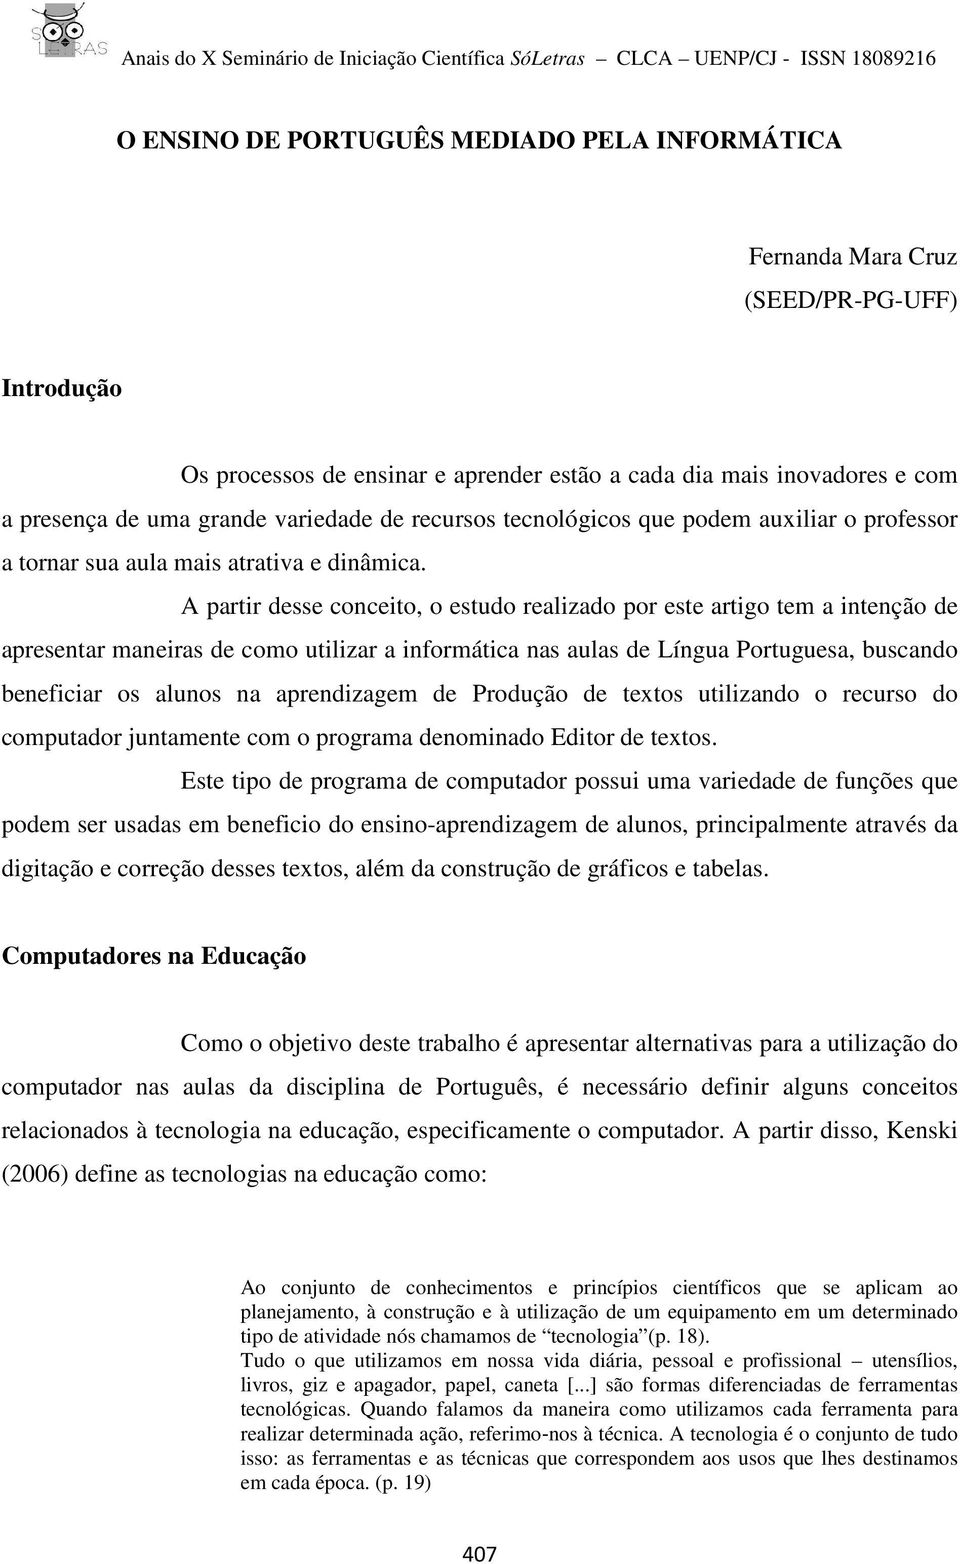 A partir desse conceito, o estudo realizado por este artigo tem a intenção de apresentar maneiras de como utilizar a informática nas aulas de Língua Portuguesa, buscando beneficiar os alunos na